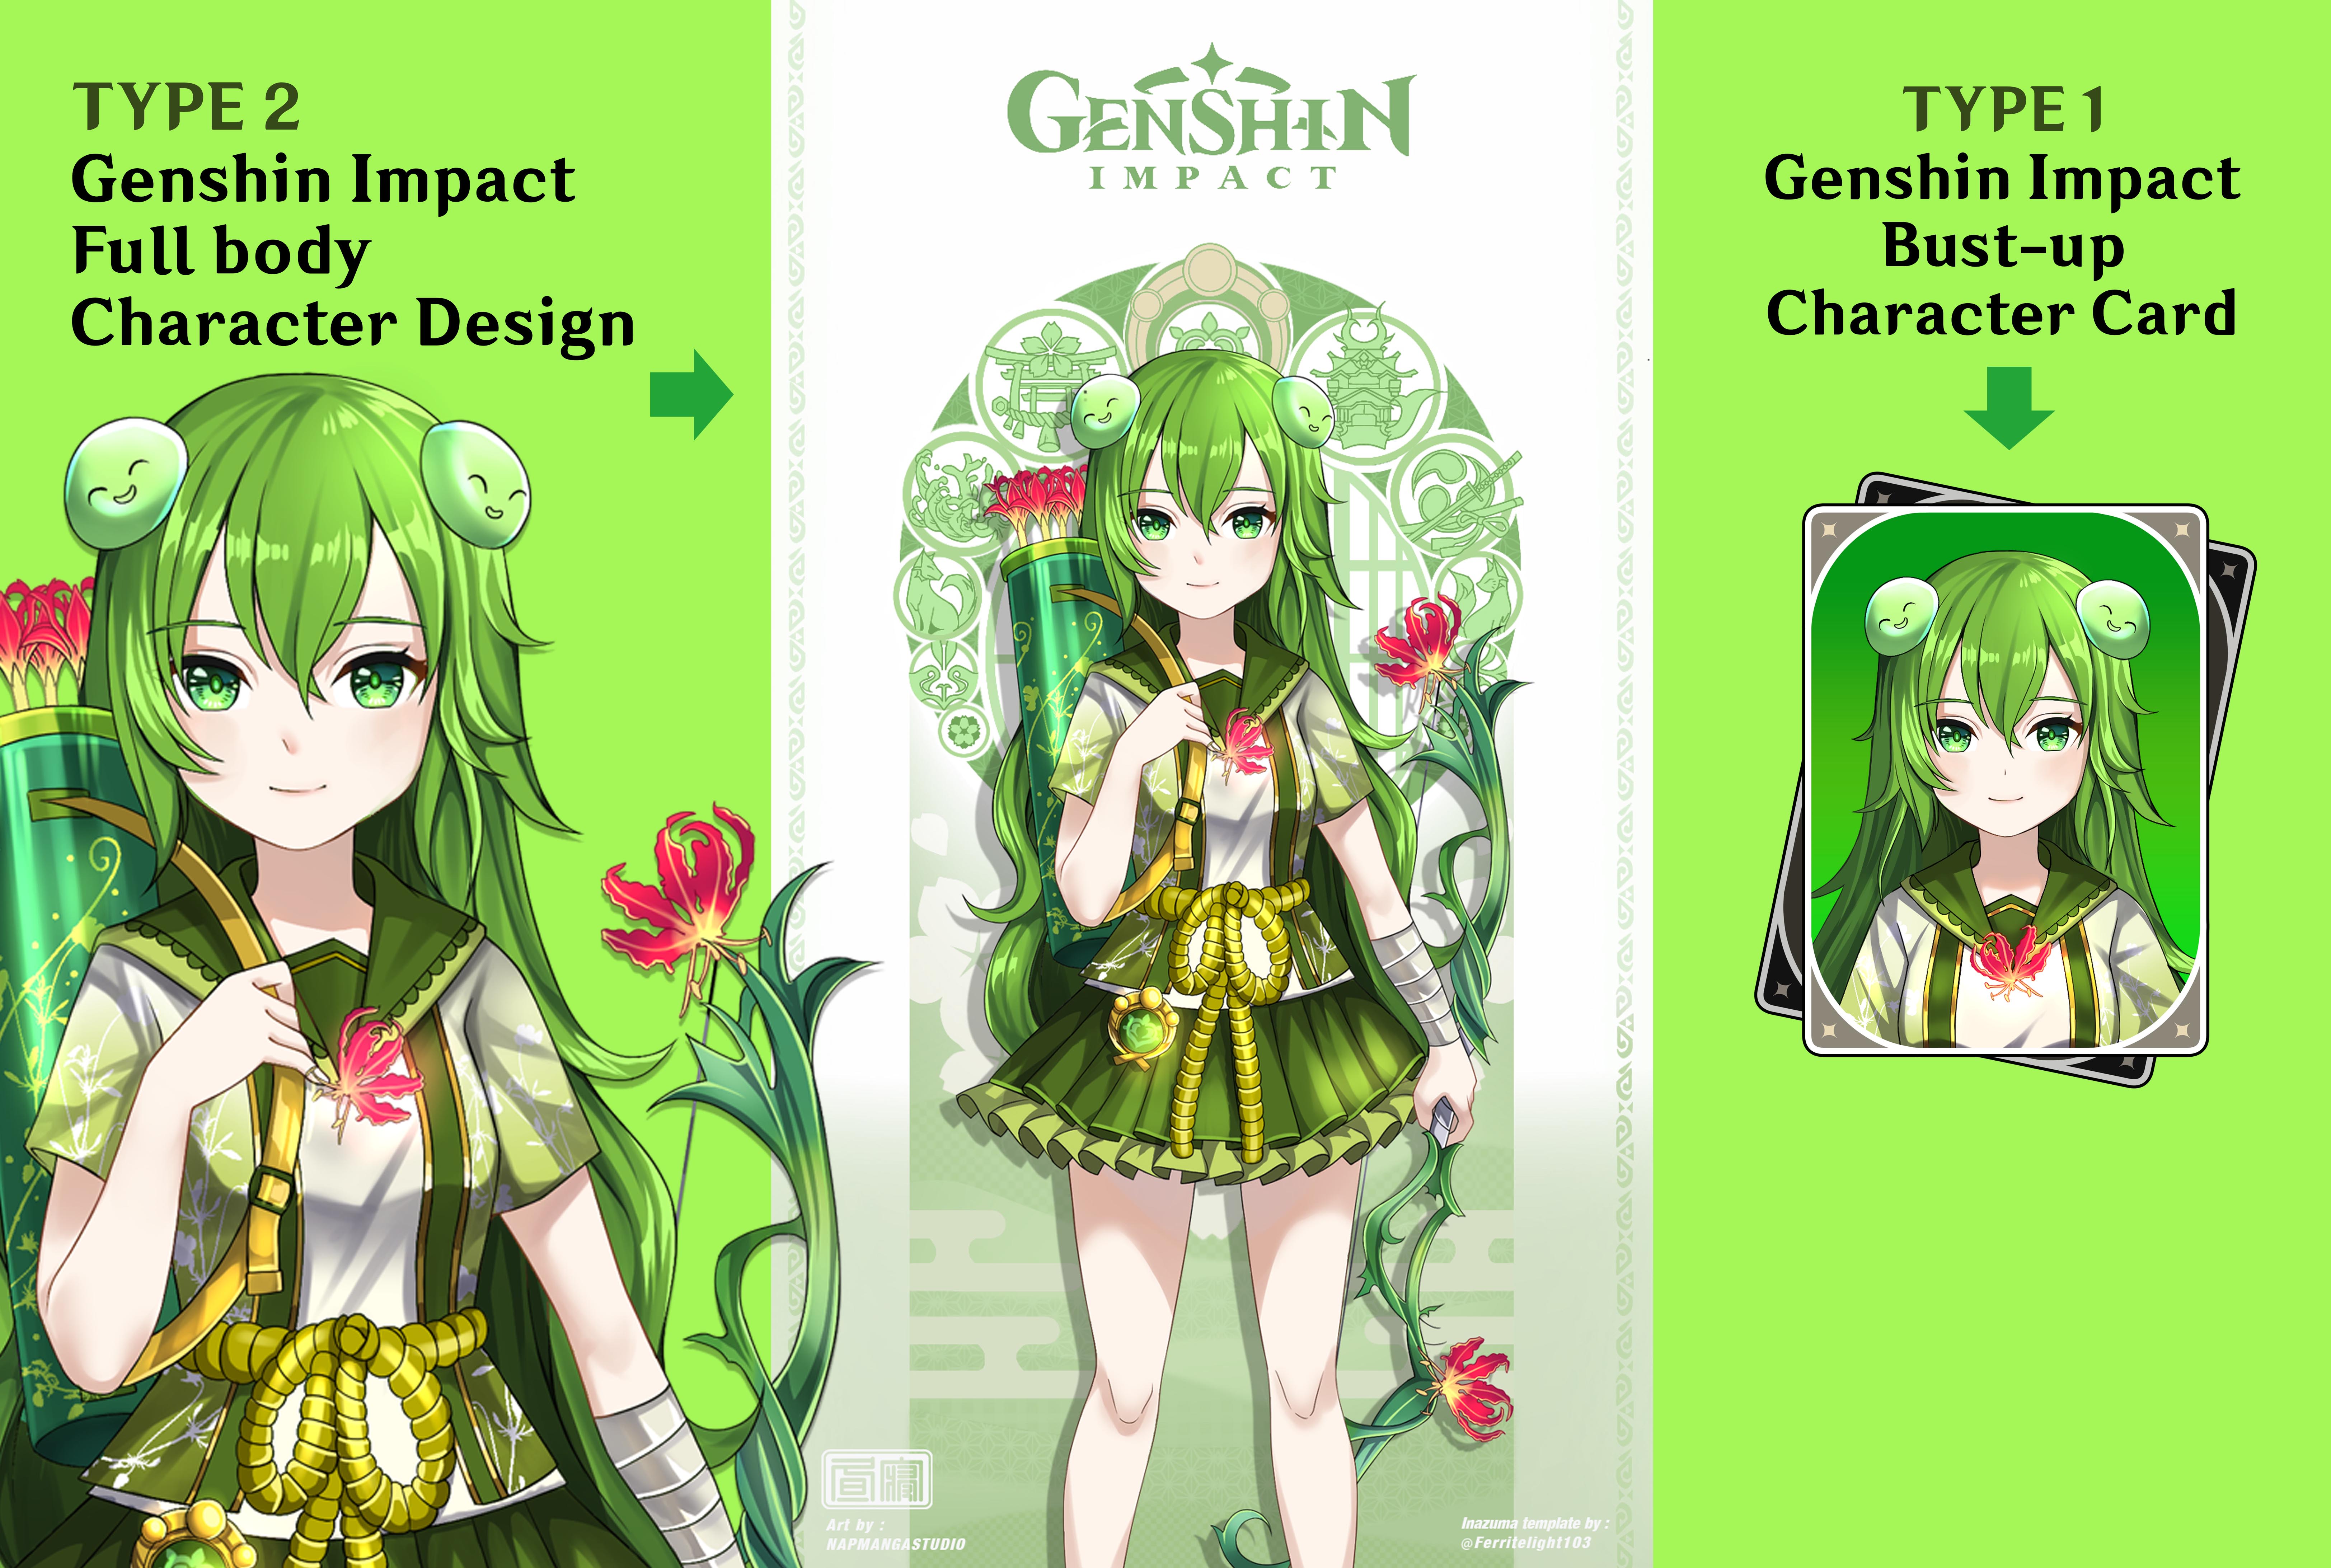 Có ai nói rằng bạn không thể tạo ra nhân vật trong Genshin Impact của riêng bạn? Với các công cụ phần mềm và hỗ trợ đồ họa, bạn hoàn toàn có thể tạo ra splash art cho nhân vật của mình. Hãy khám phá khả năng sáng tạo của bản thân và tạo ra những bức tranh tuyệt đẹp để thưởng thức.